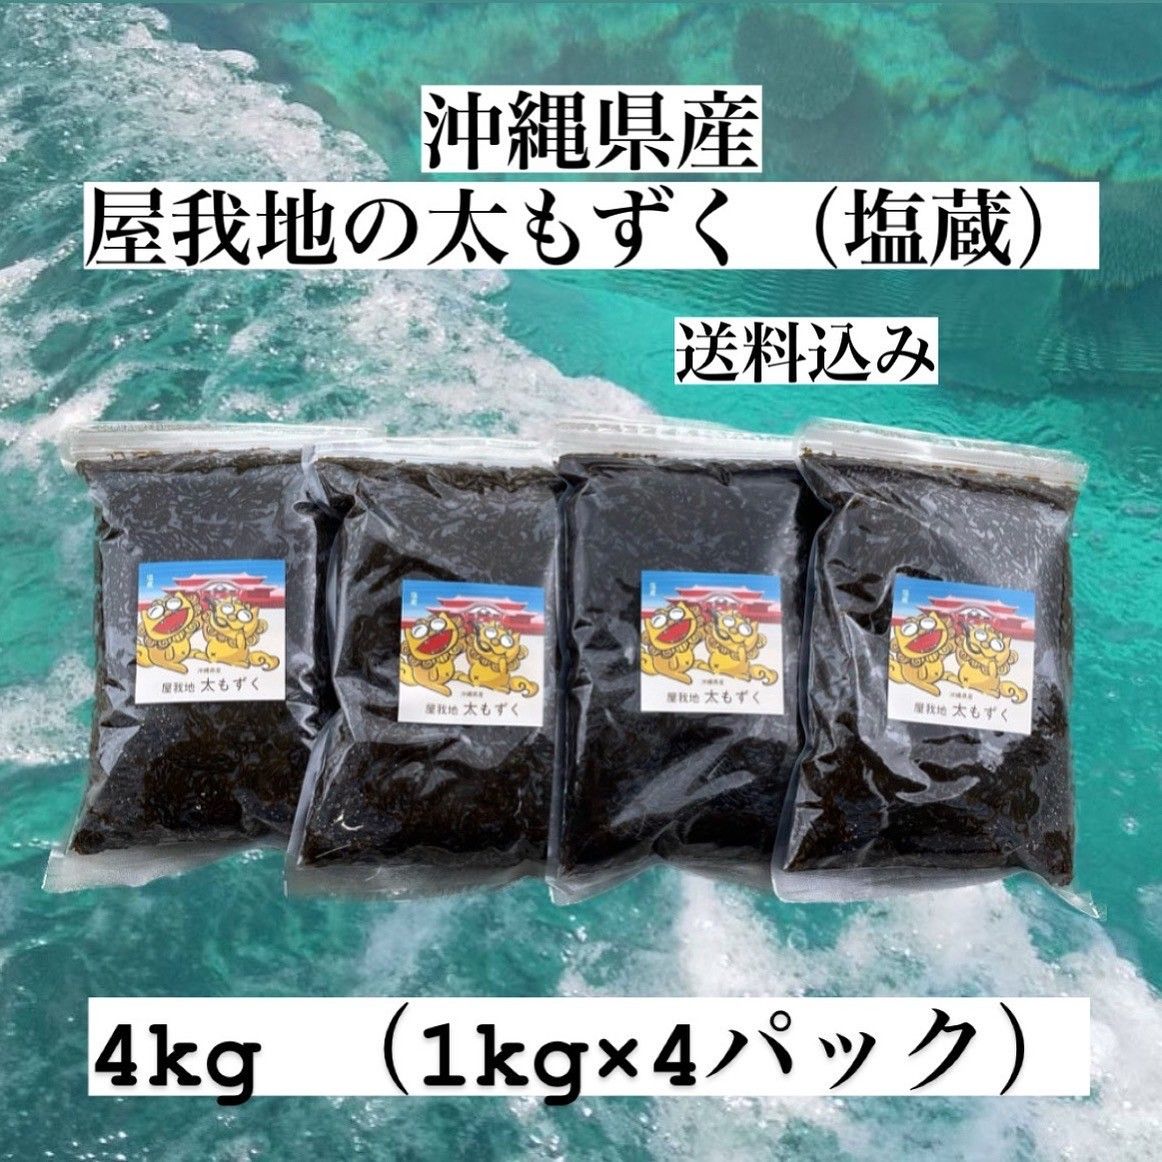 沖縄県産太もずく4kg(1kg×4パック)太くて長～い塩蔵もずく♪送料無料 沖縄特産品 沖縄料理